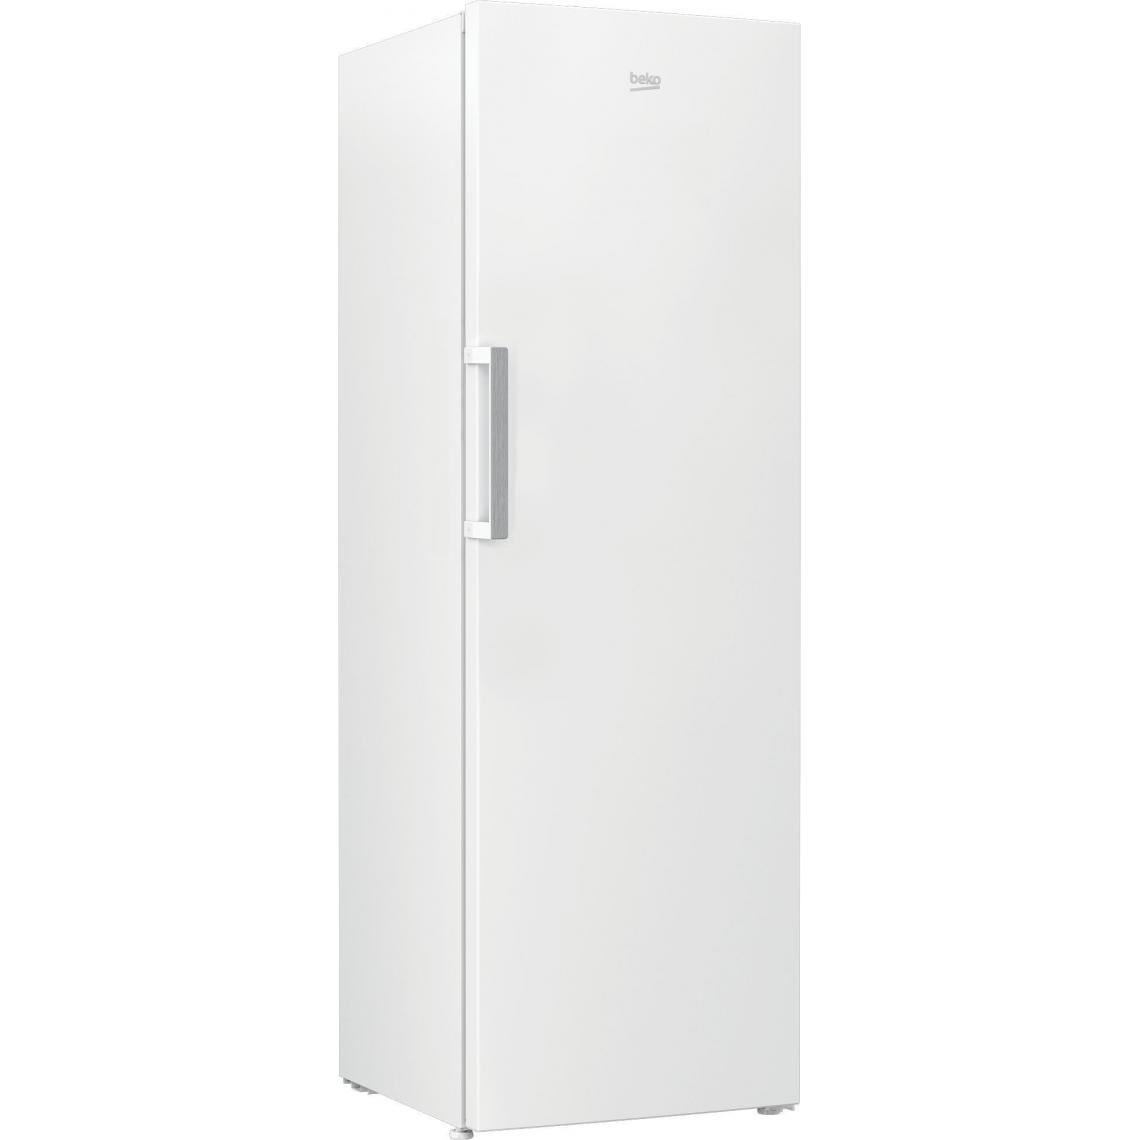 Beko - beko - rsse415m31wn - Réfrigérateur